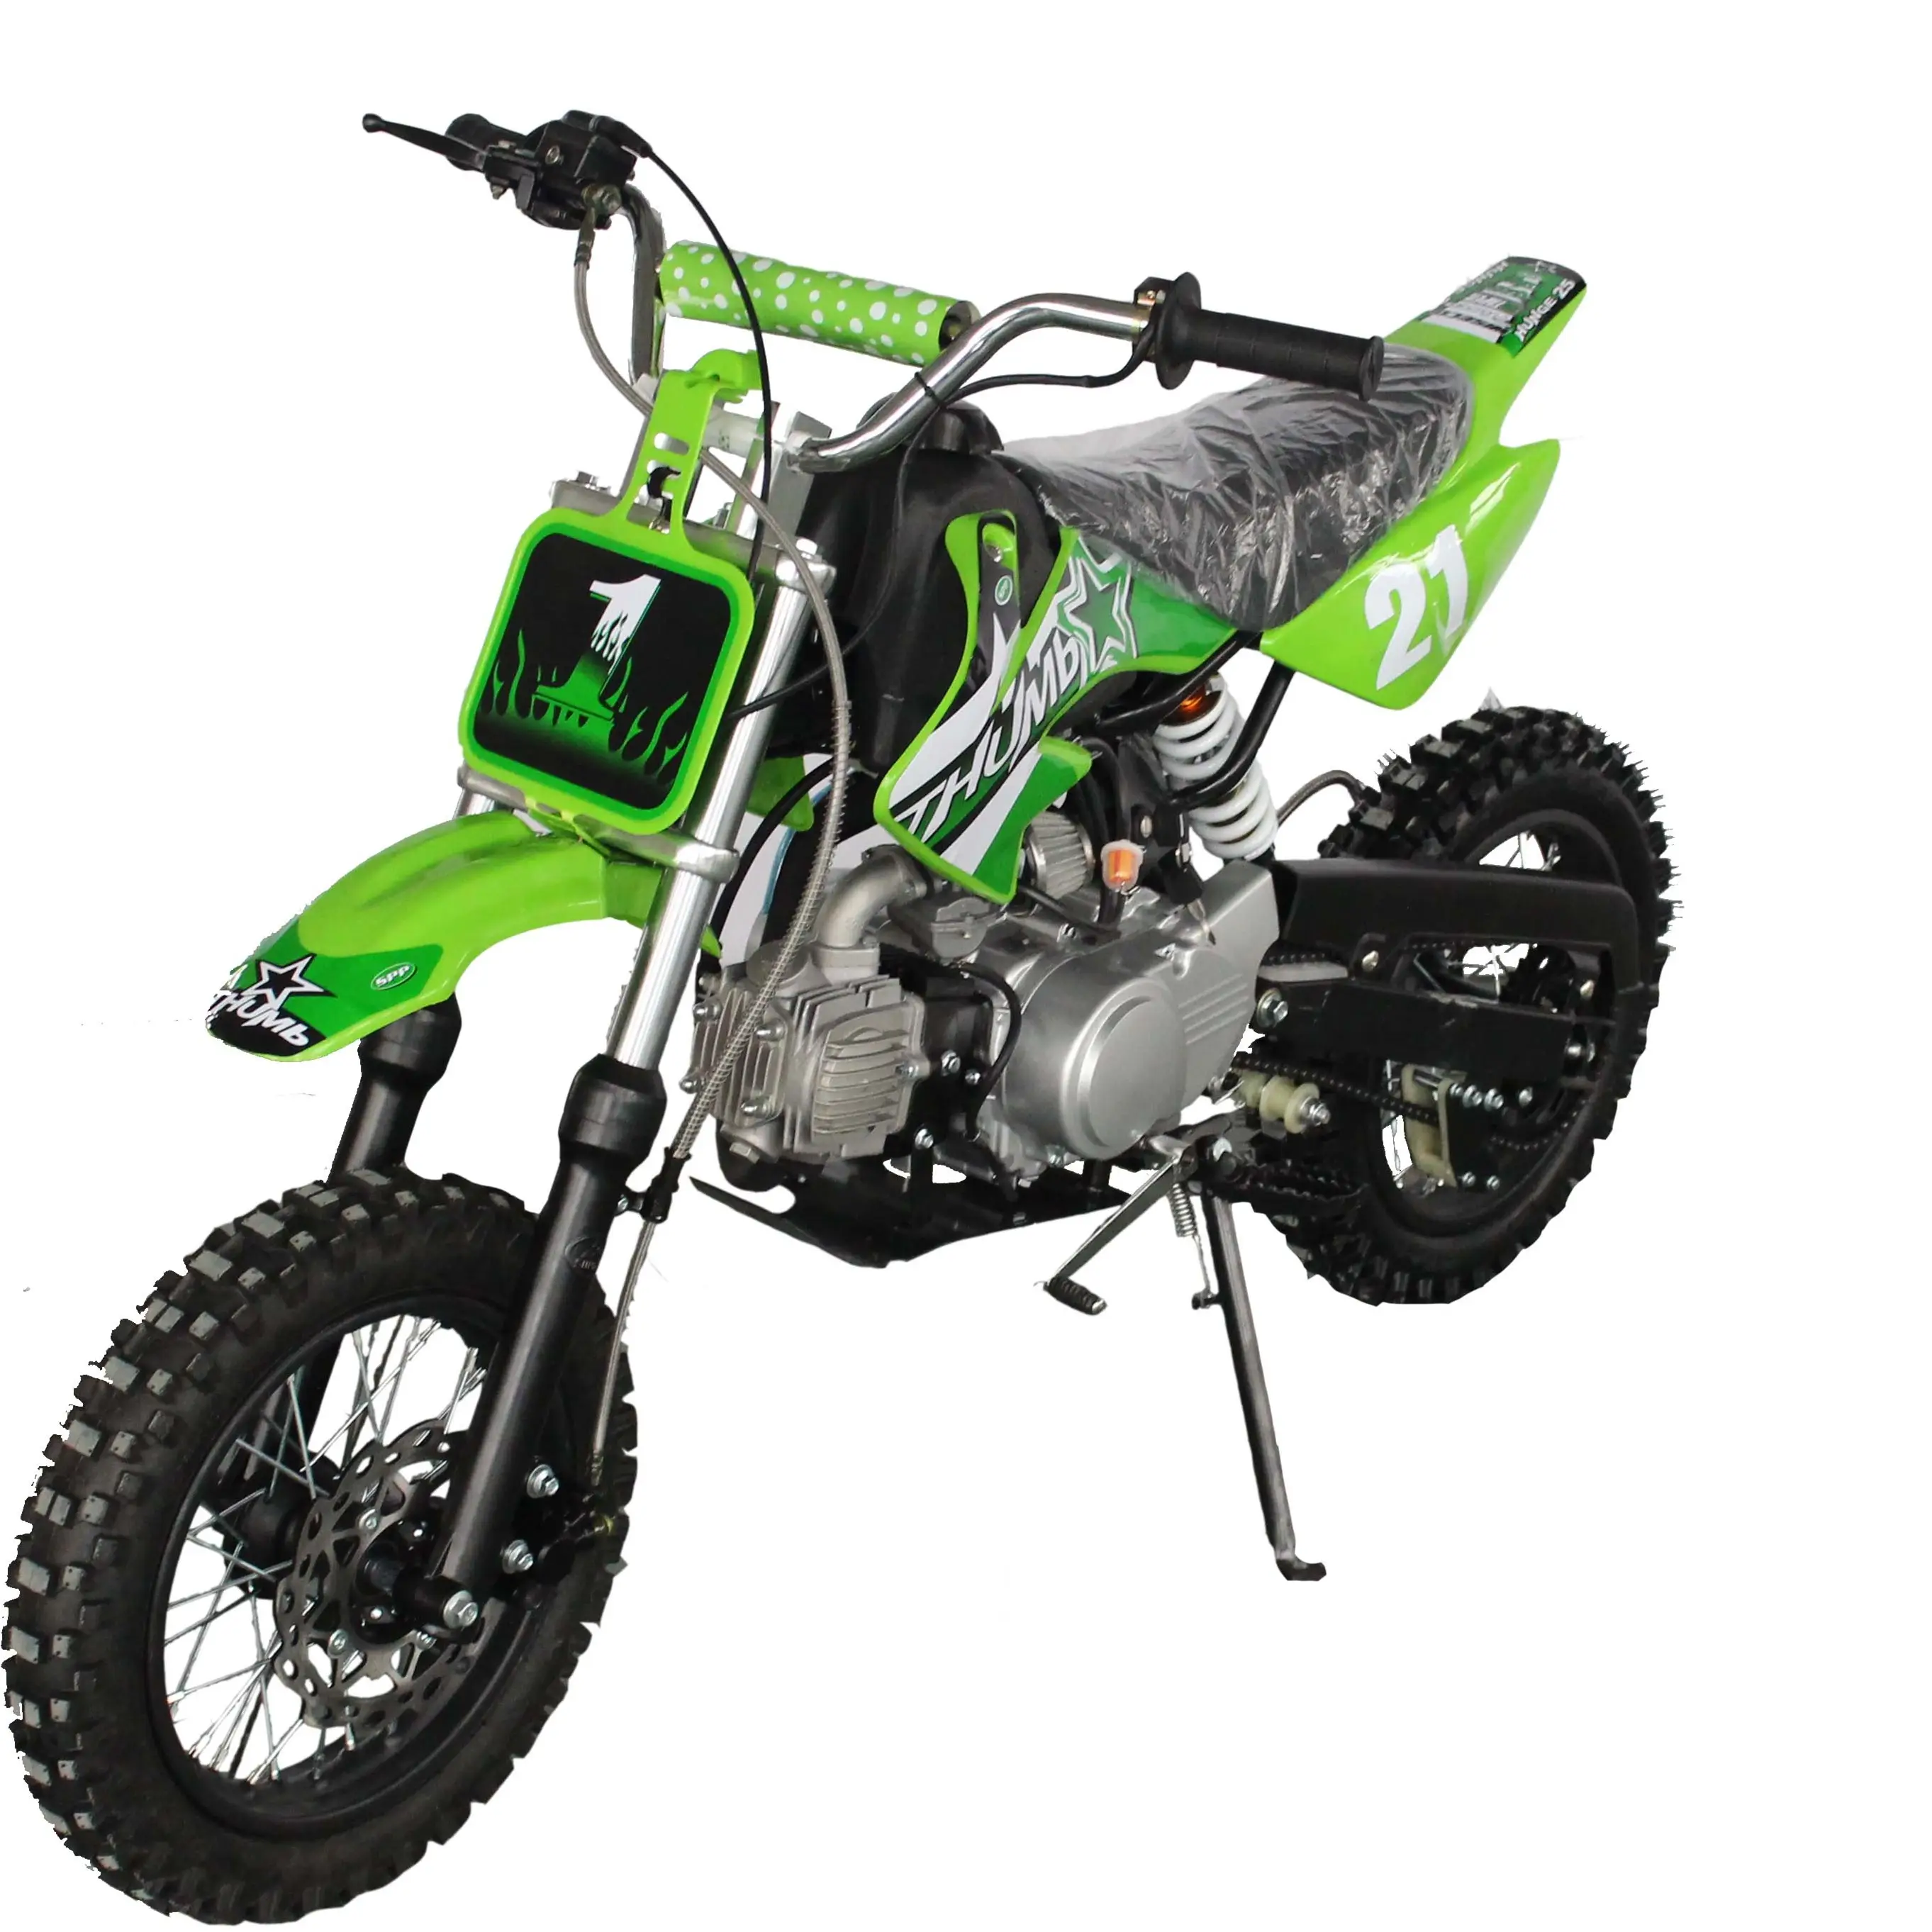 110cc-125cc automatische dirt bike für erwachsene 1250cc dirt bike Cross-country motorrad